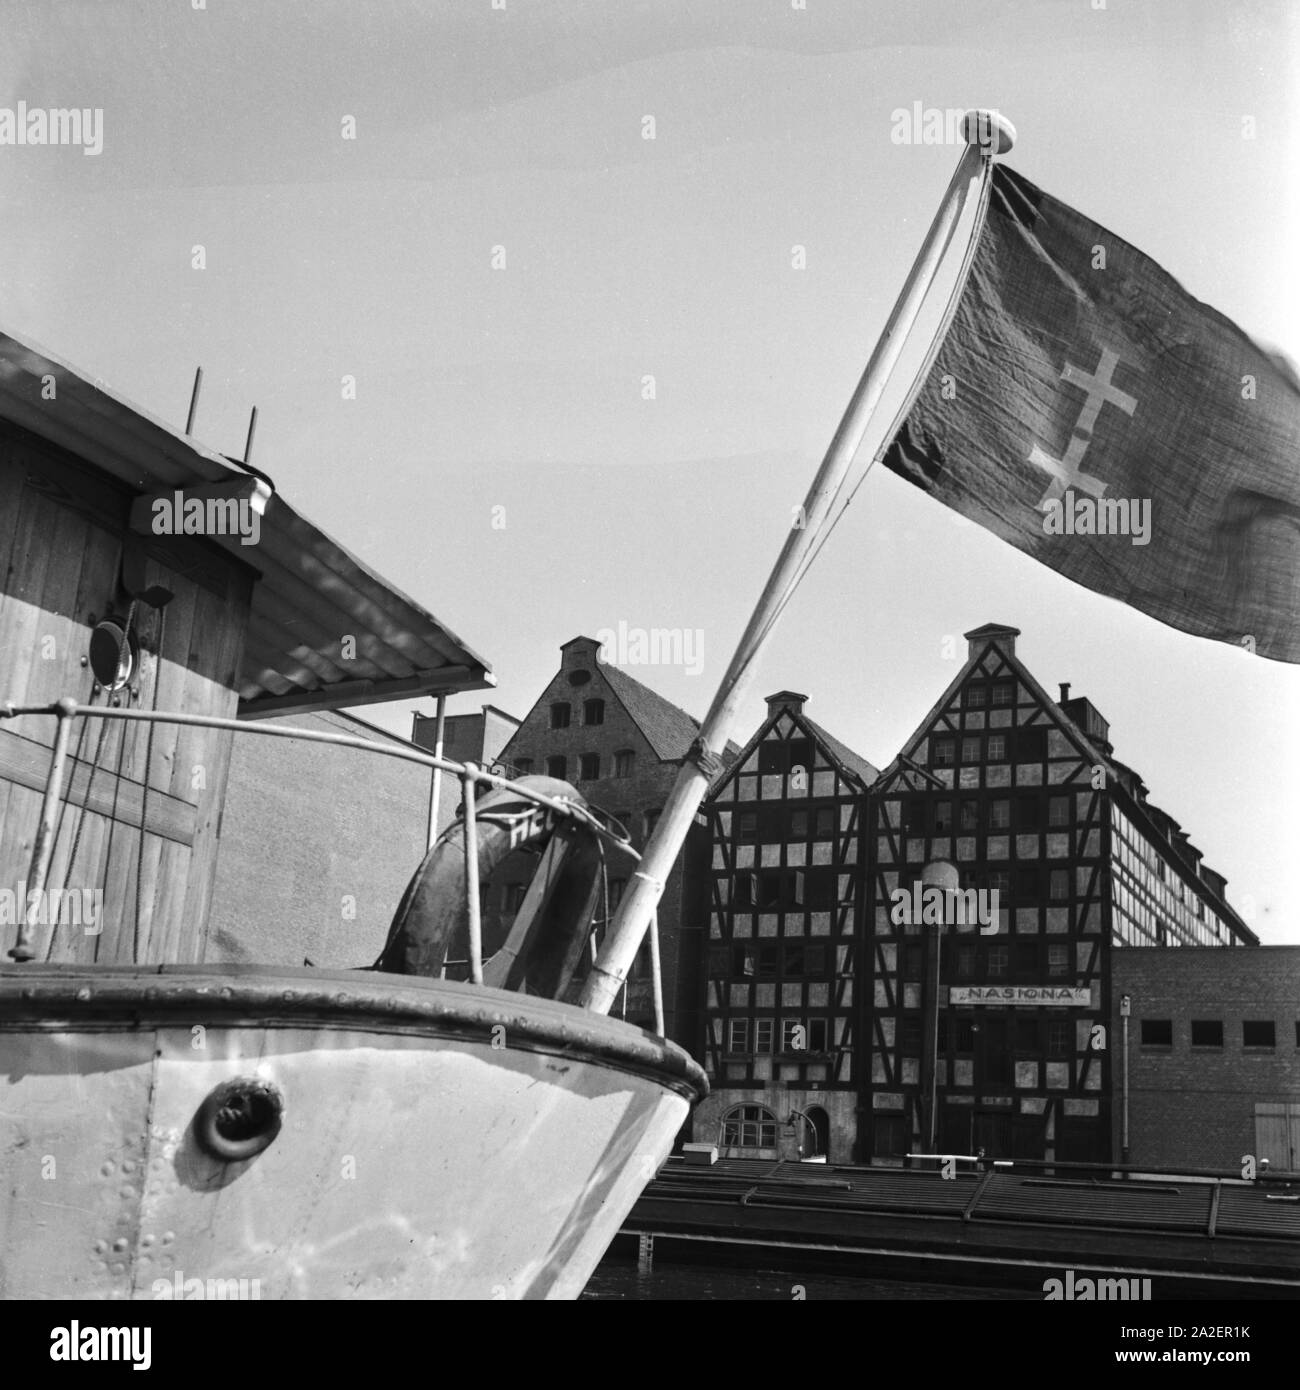 Speicherhäuser und Schiff mit Flagge im Hafen von Danzig, Deutschland 1930er Jahre. Warehouses and ship with flag at Danzig, Germany 1930s. Stock Photo